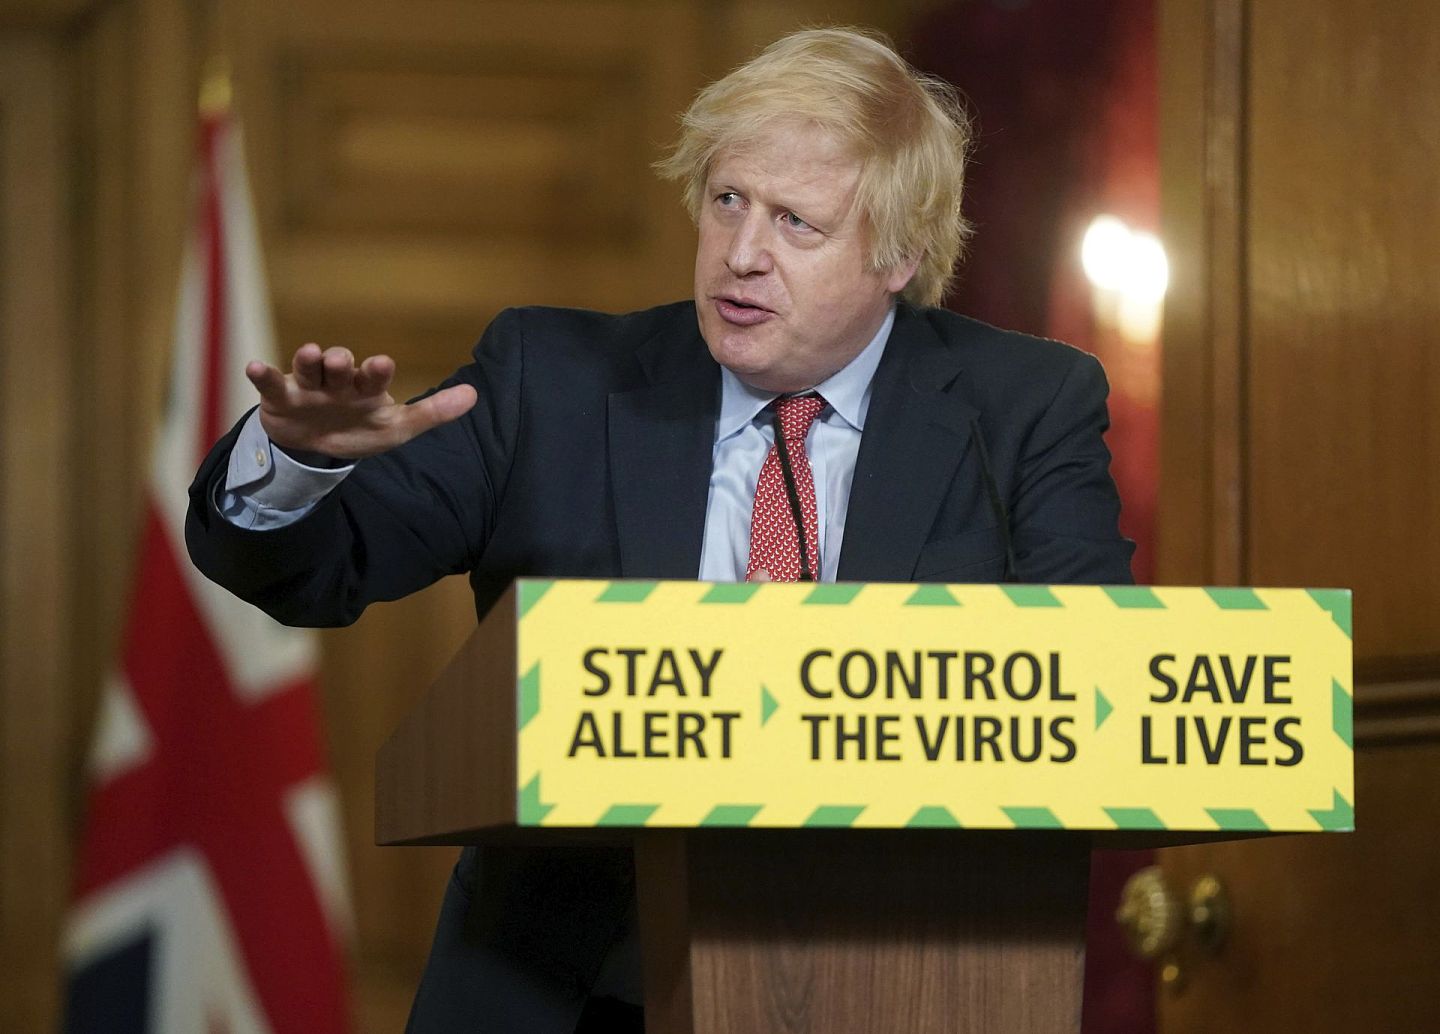 英国首相约翰逊（Boris Johnson）曾一度感染新冠肺炎，对英国的冲击非常之大。英国已经向牛津大学的疫苗项目提供了资金支持。（AP）